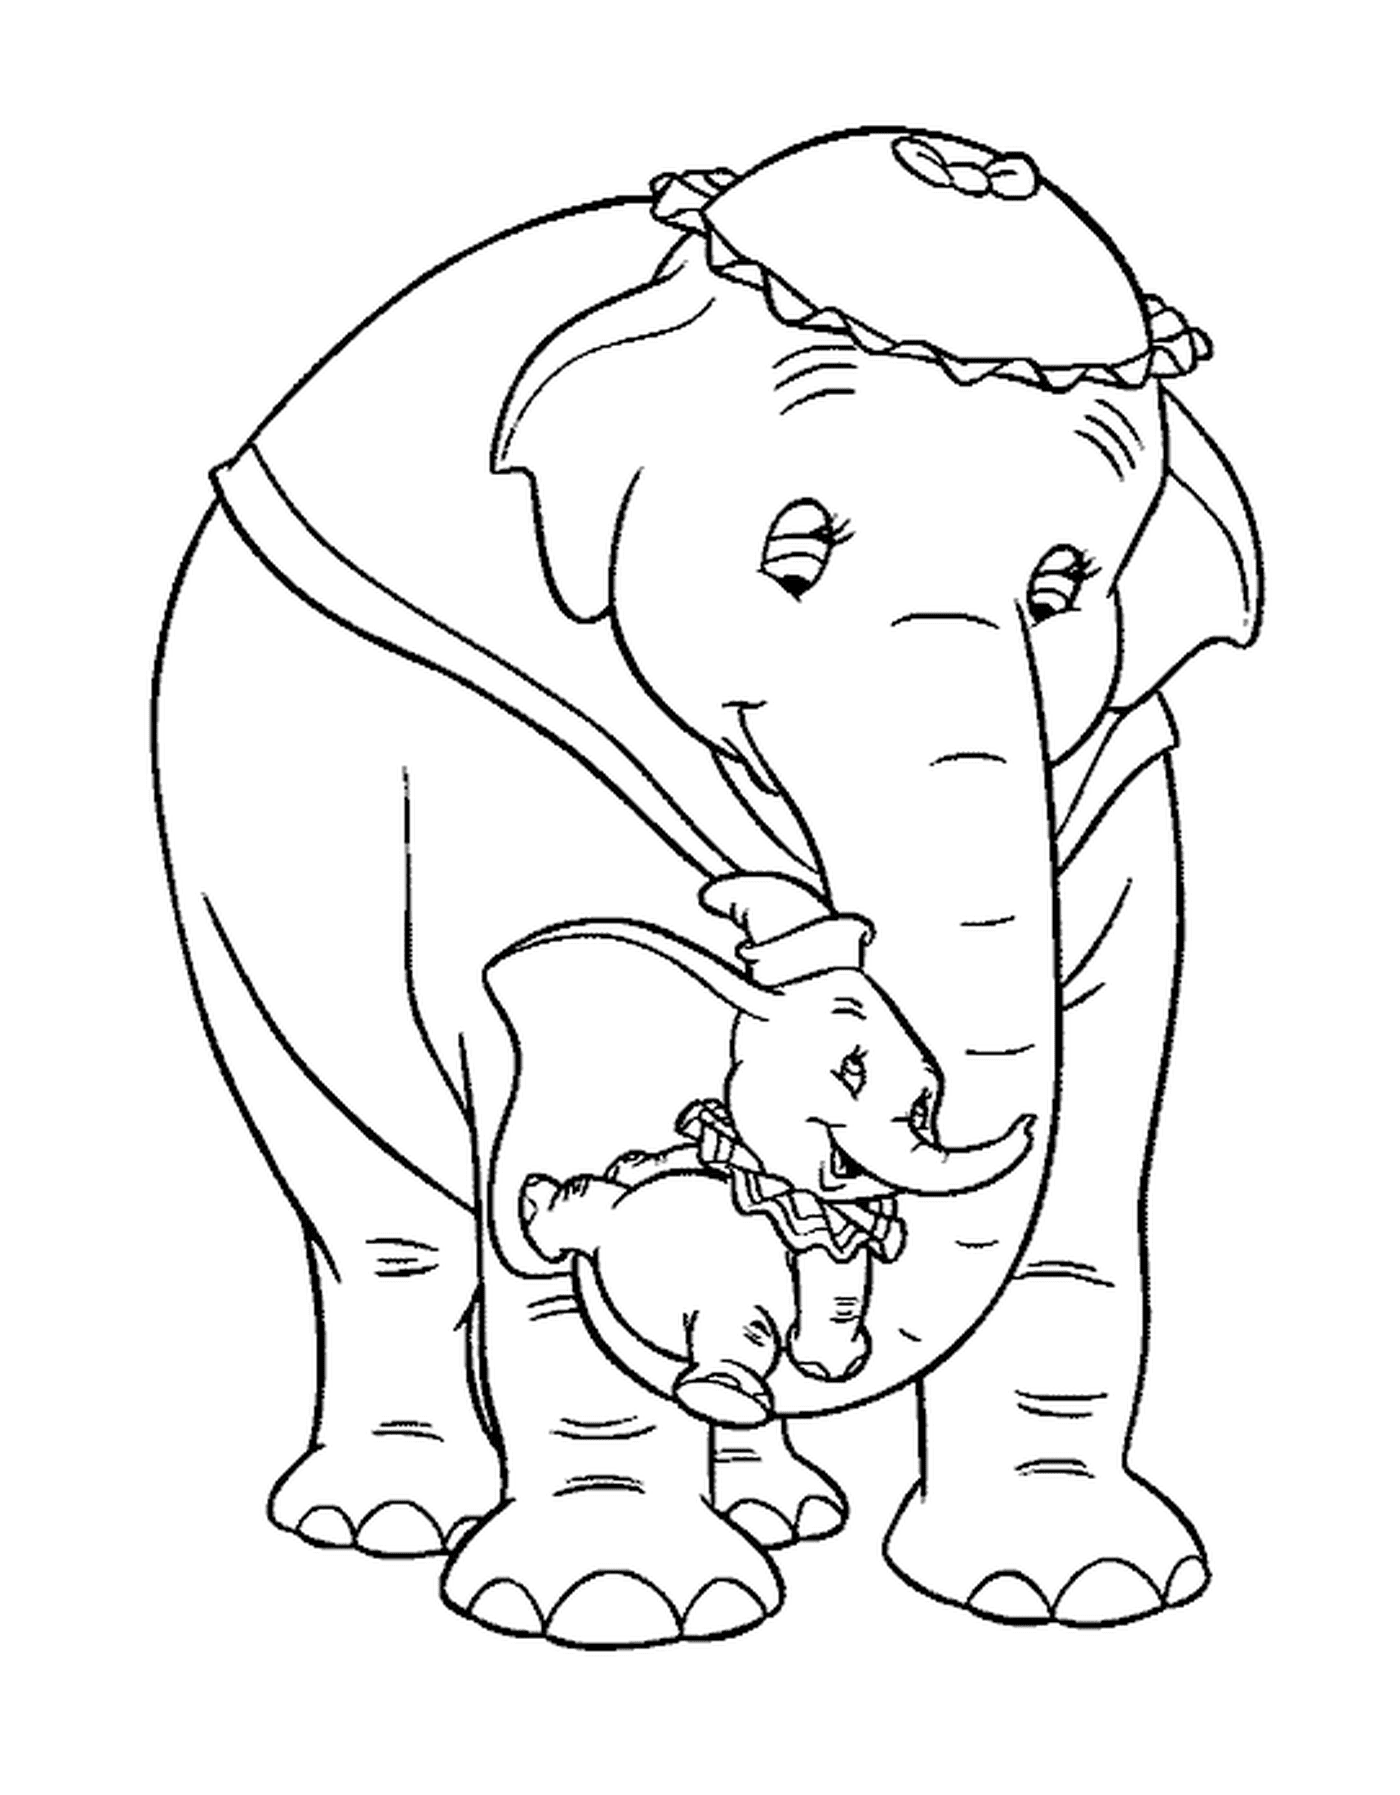  一只成年大象和他隔壁的孩子 